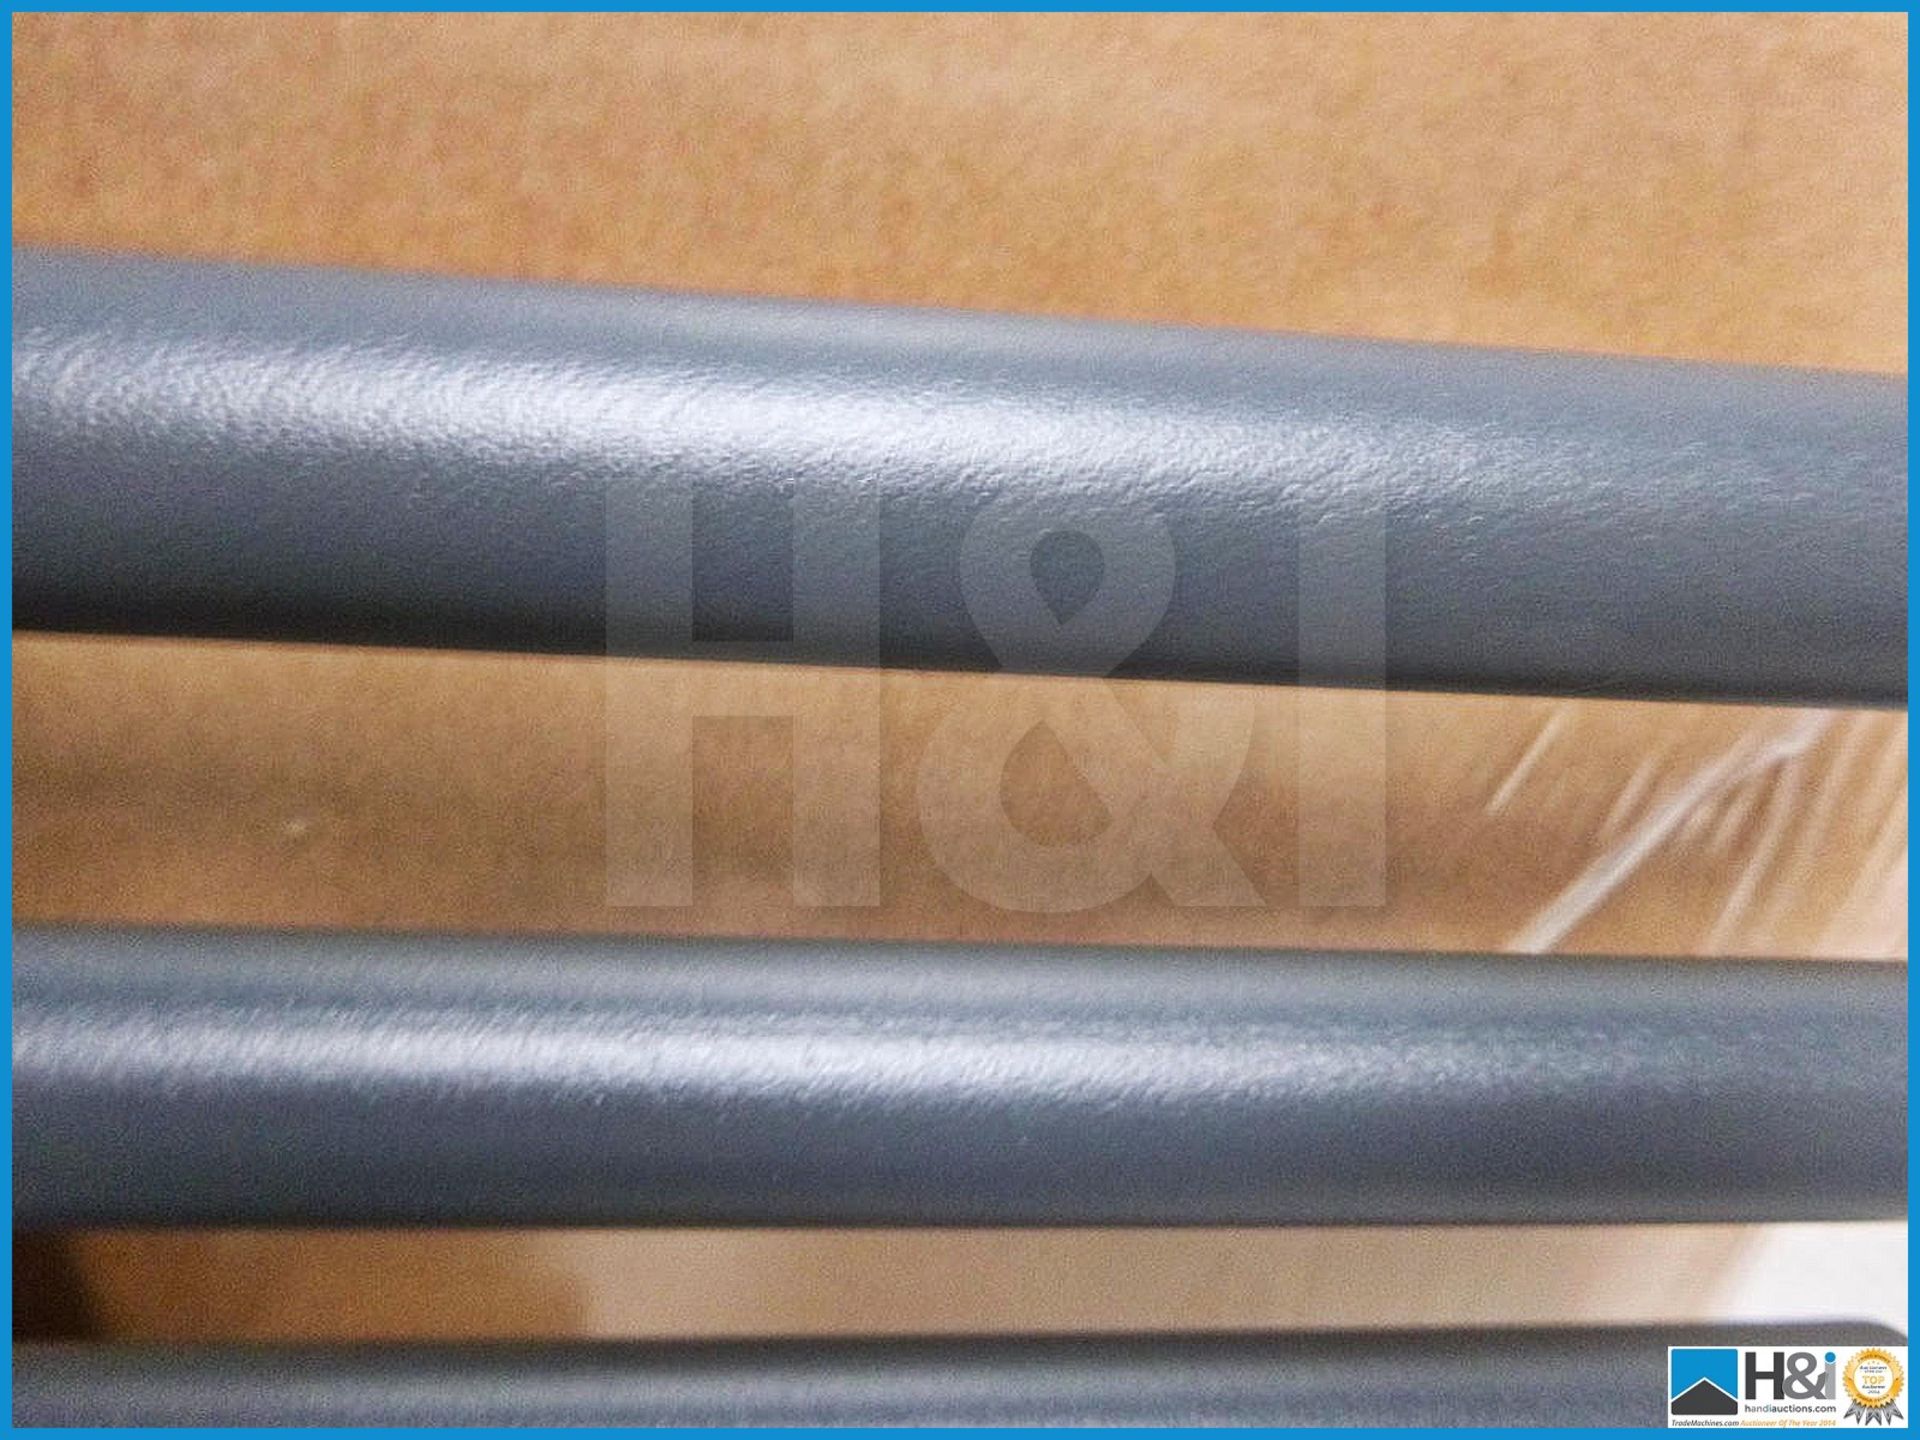 Designer tube on tube alternate rail towel radiator in matt silver 715mm X 550mm. RRP £289. - Image 3 of 3